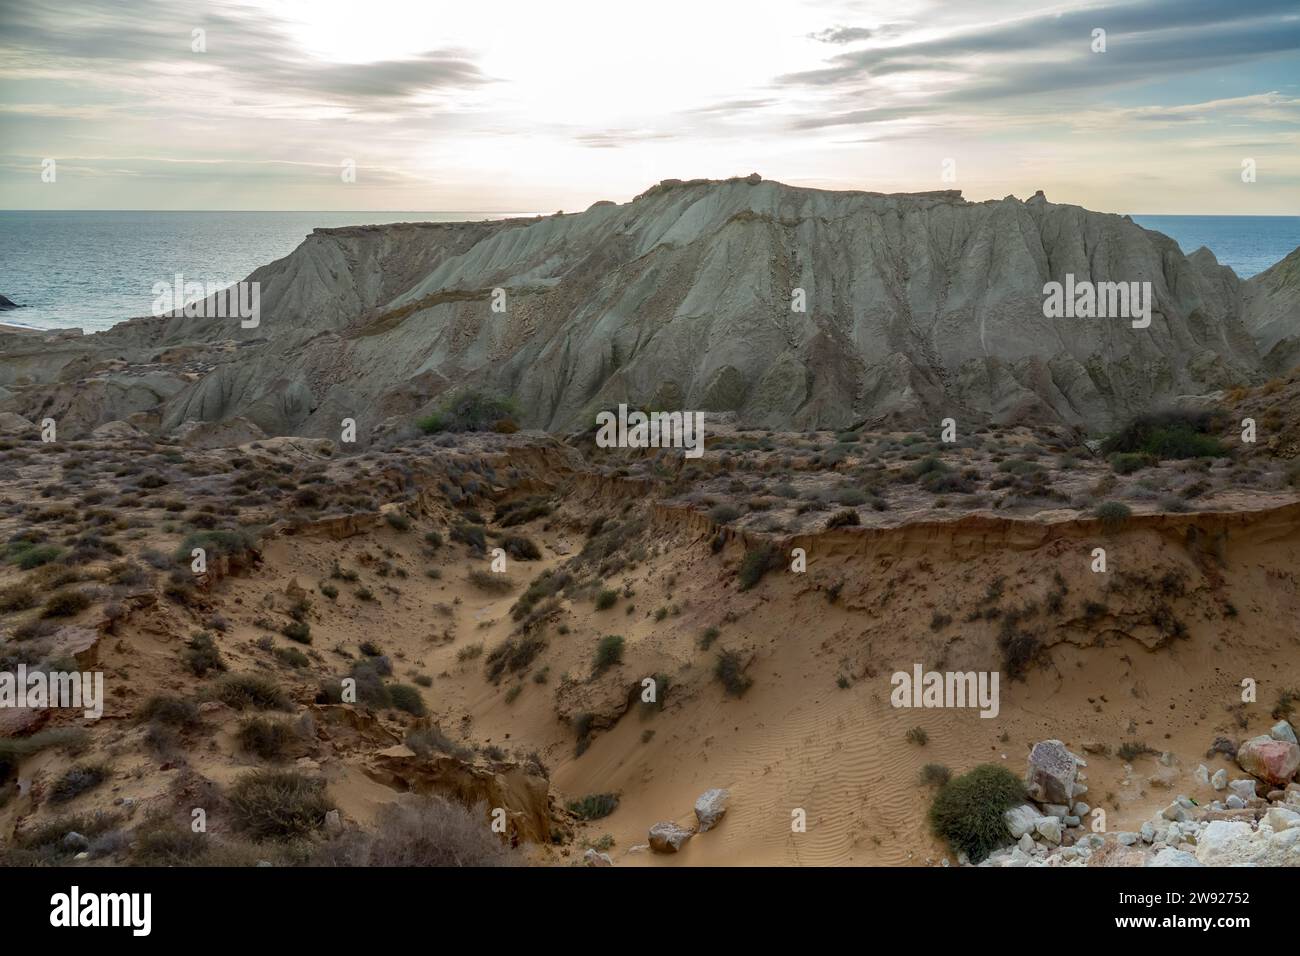 Paysage de montagne sauvage, roches éoliennes et érosion hydrique. Origine volcanique Île d'Ormuz, Iran Banque D'Images